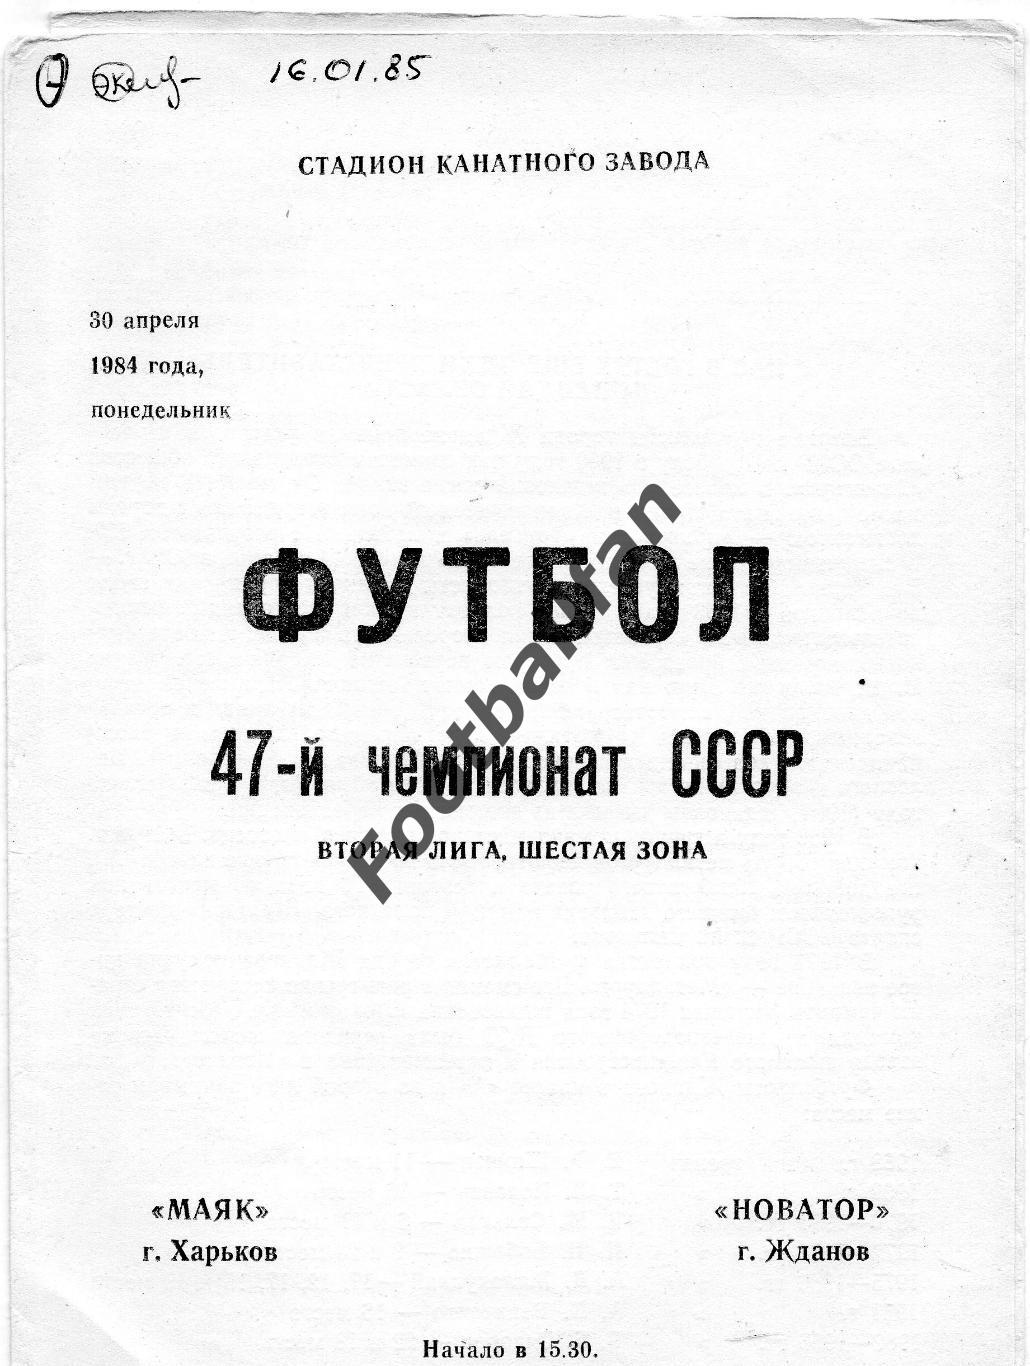 Маяк Харьков - Новатор Жданов ( Мариуполь ) 30.04.1984